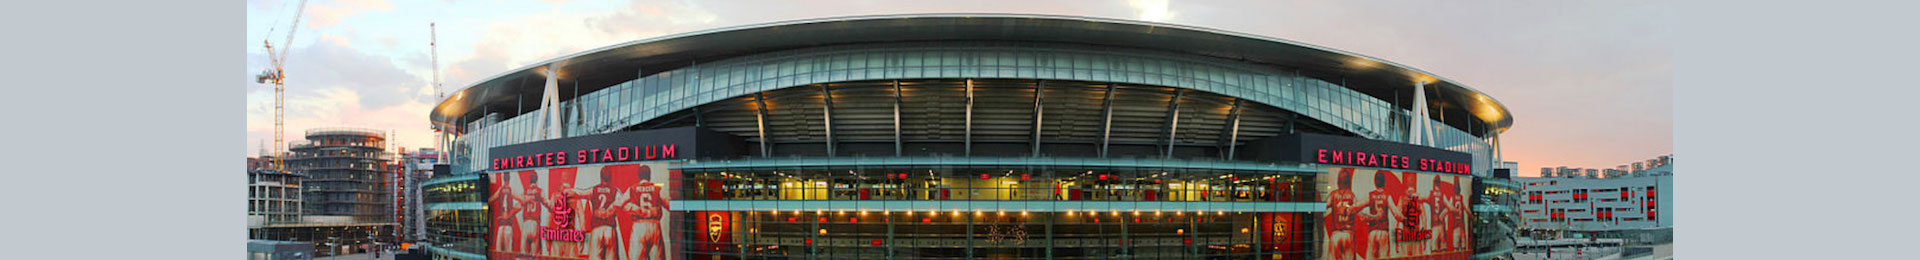 Arsenal Emirates Stadium Tour banner image